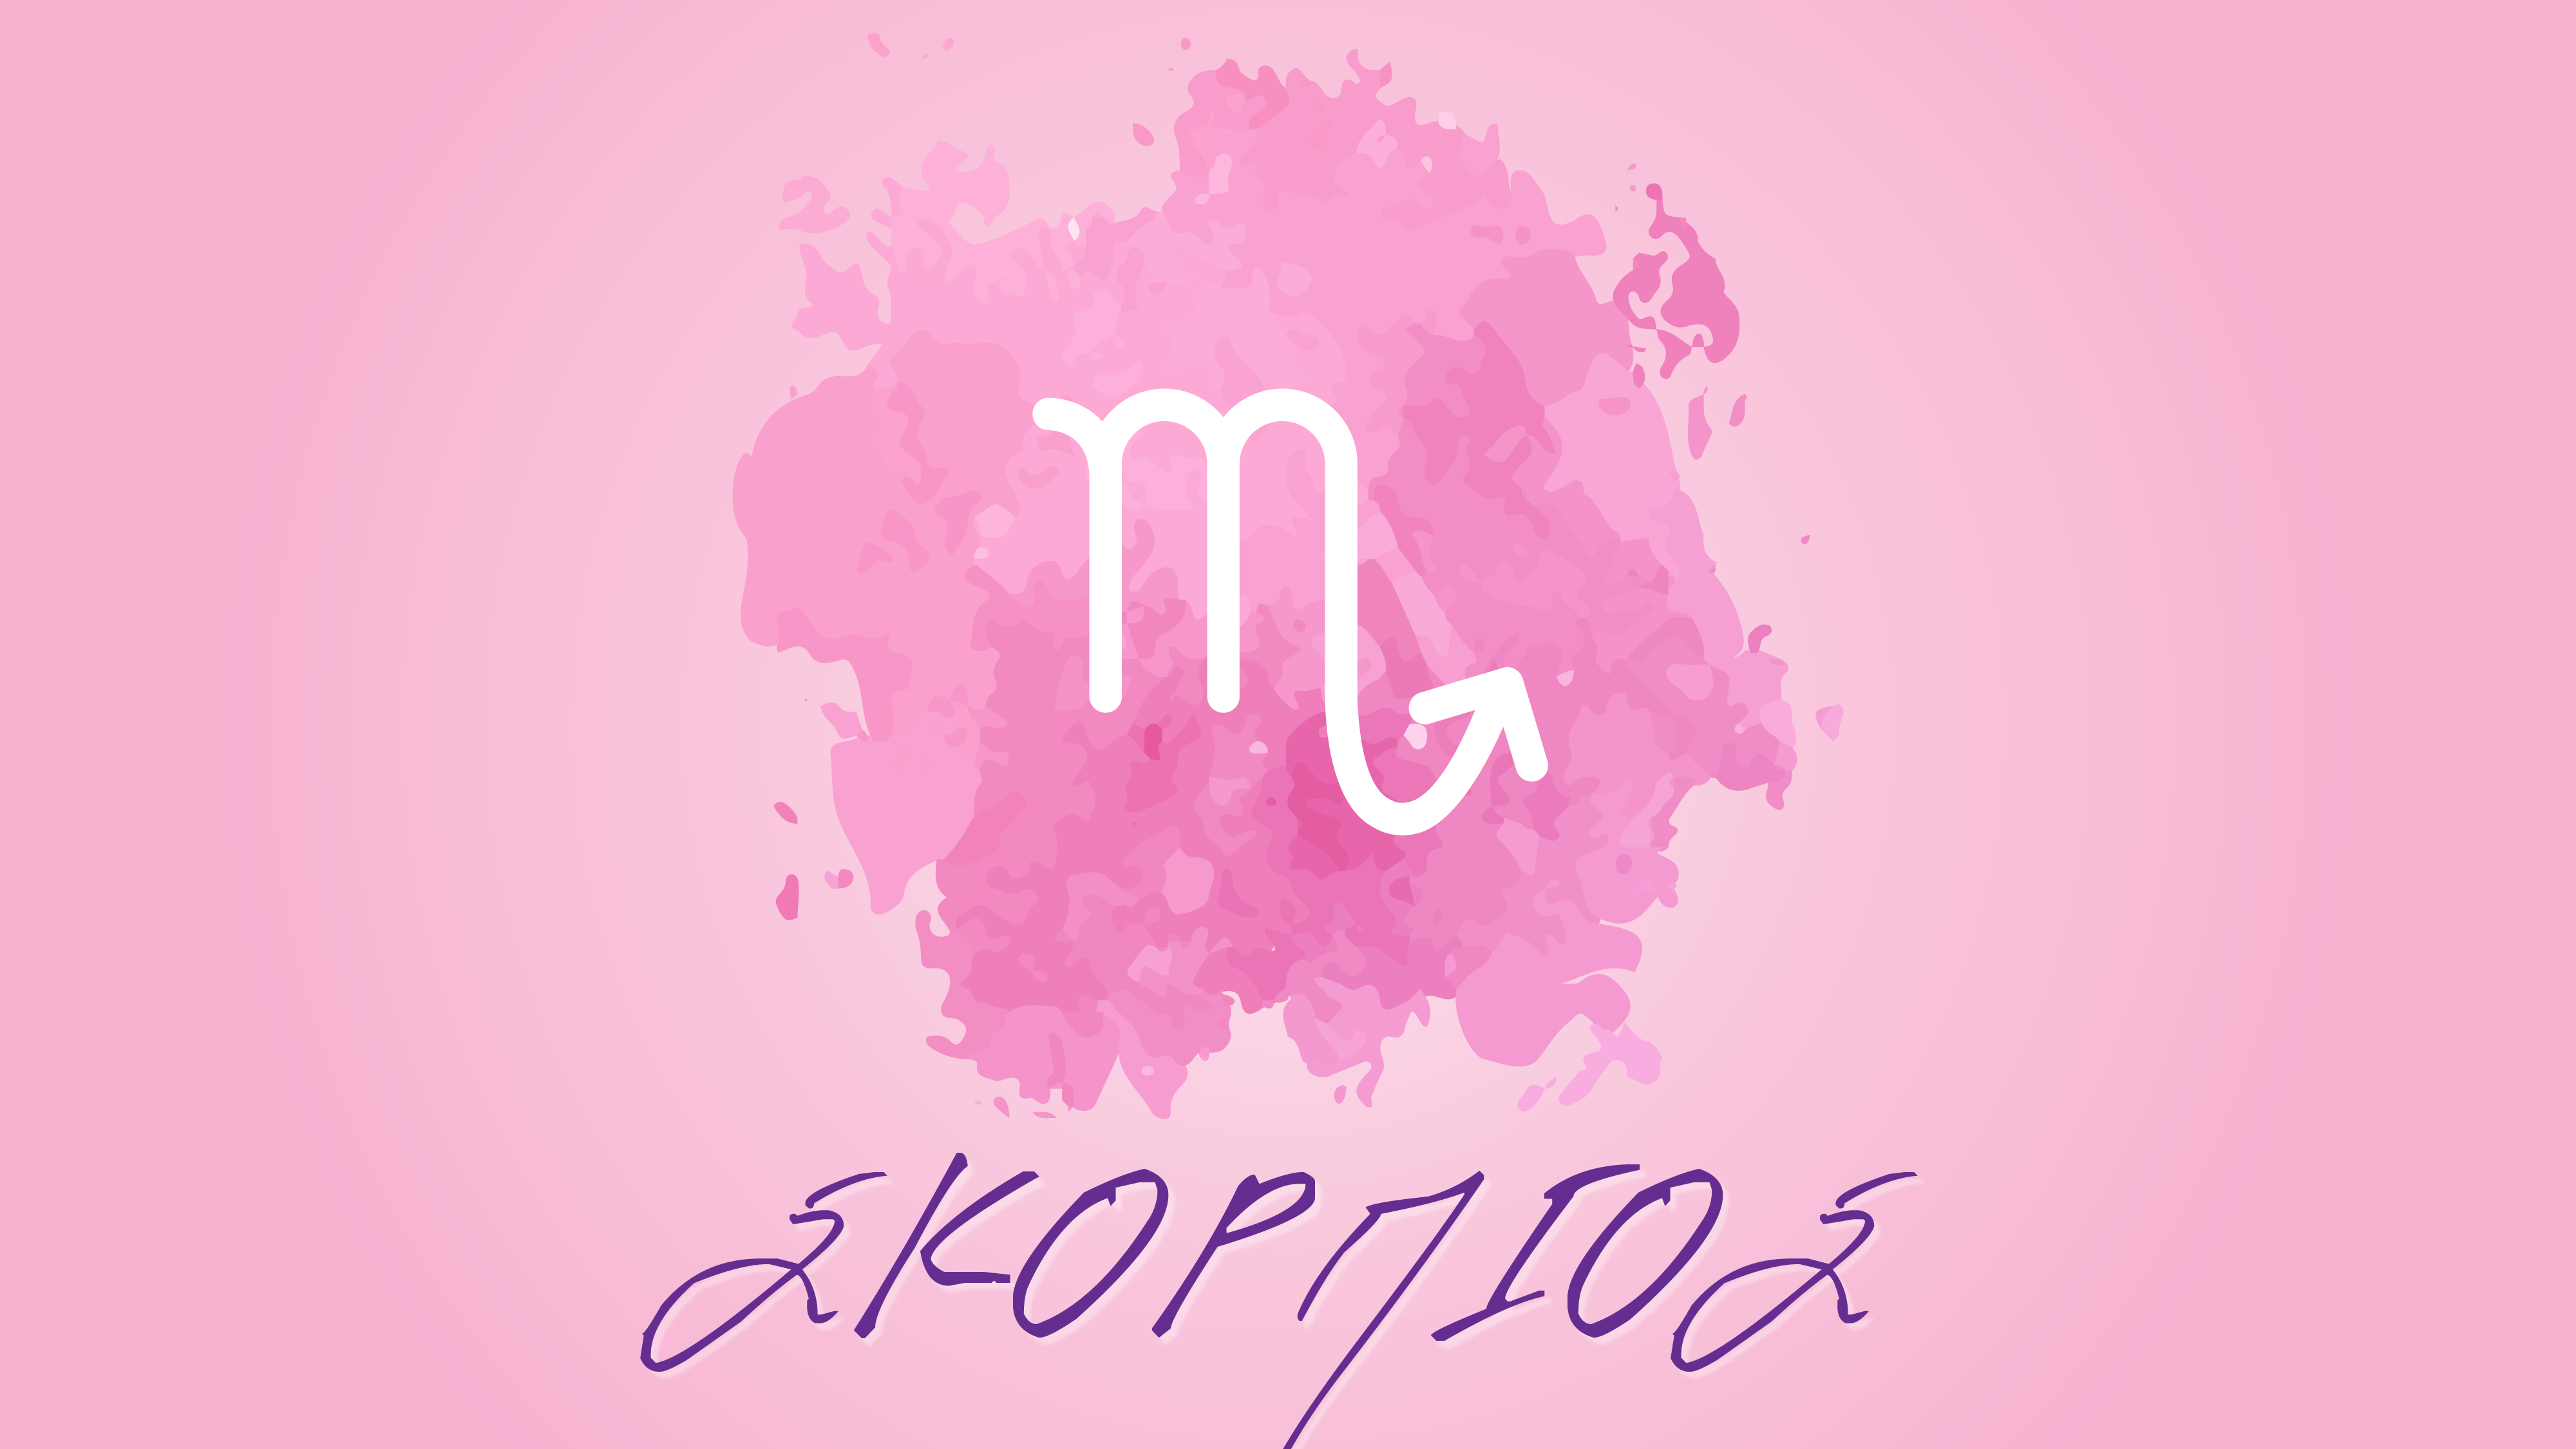 Σκορπιός  (23 Οκτωβρίου – 22 Νοεμβρίου) – Μηνιαίες αστρολογικές προβλέψεις Μαρτίου 2020 από την Αλίντα Κανάκη !